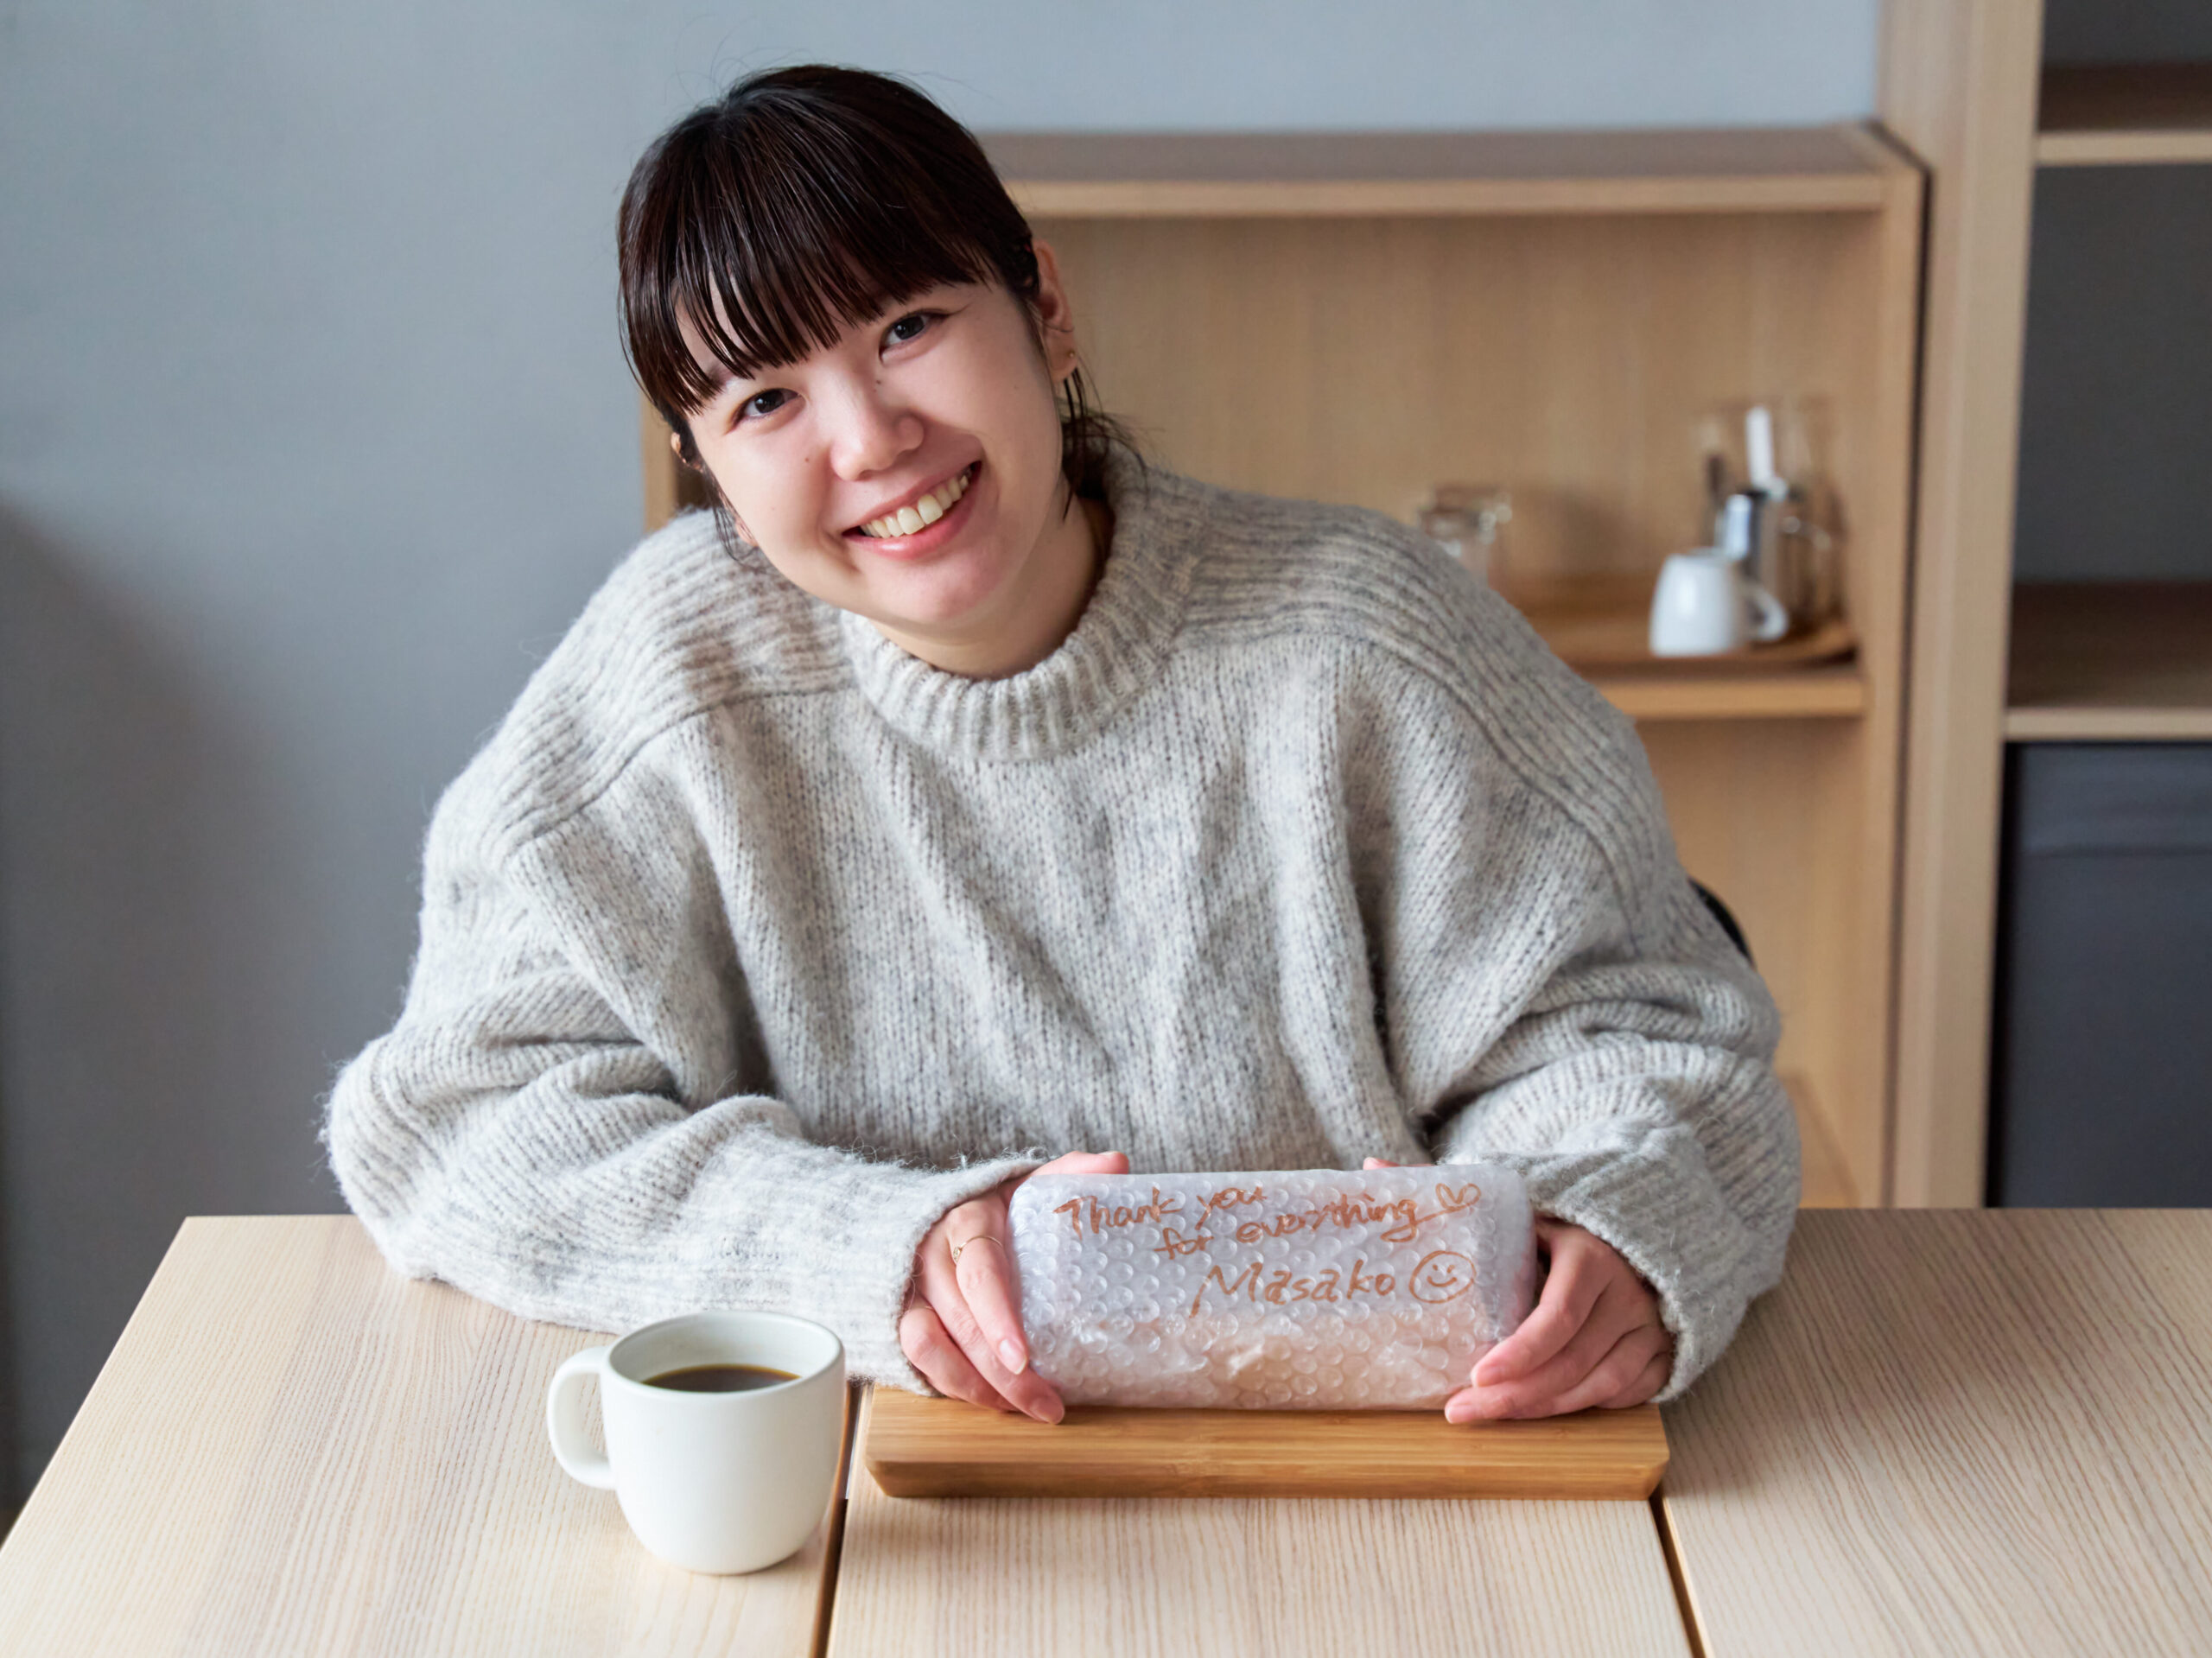 スペシャルティチーズケーキの包装には、Masakoの手書きメッセージが